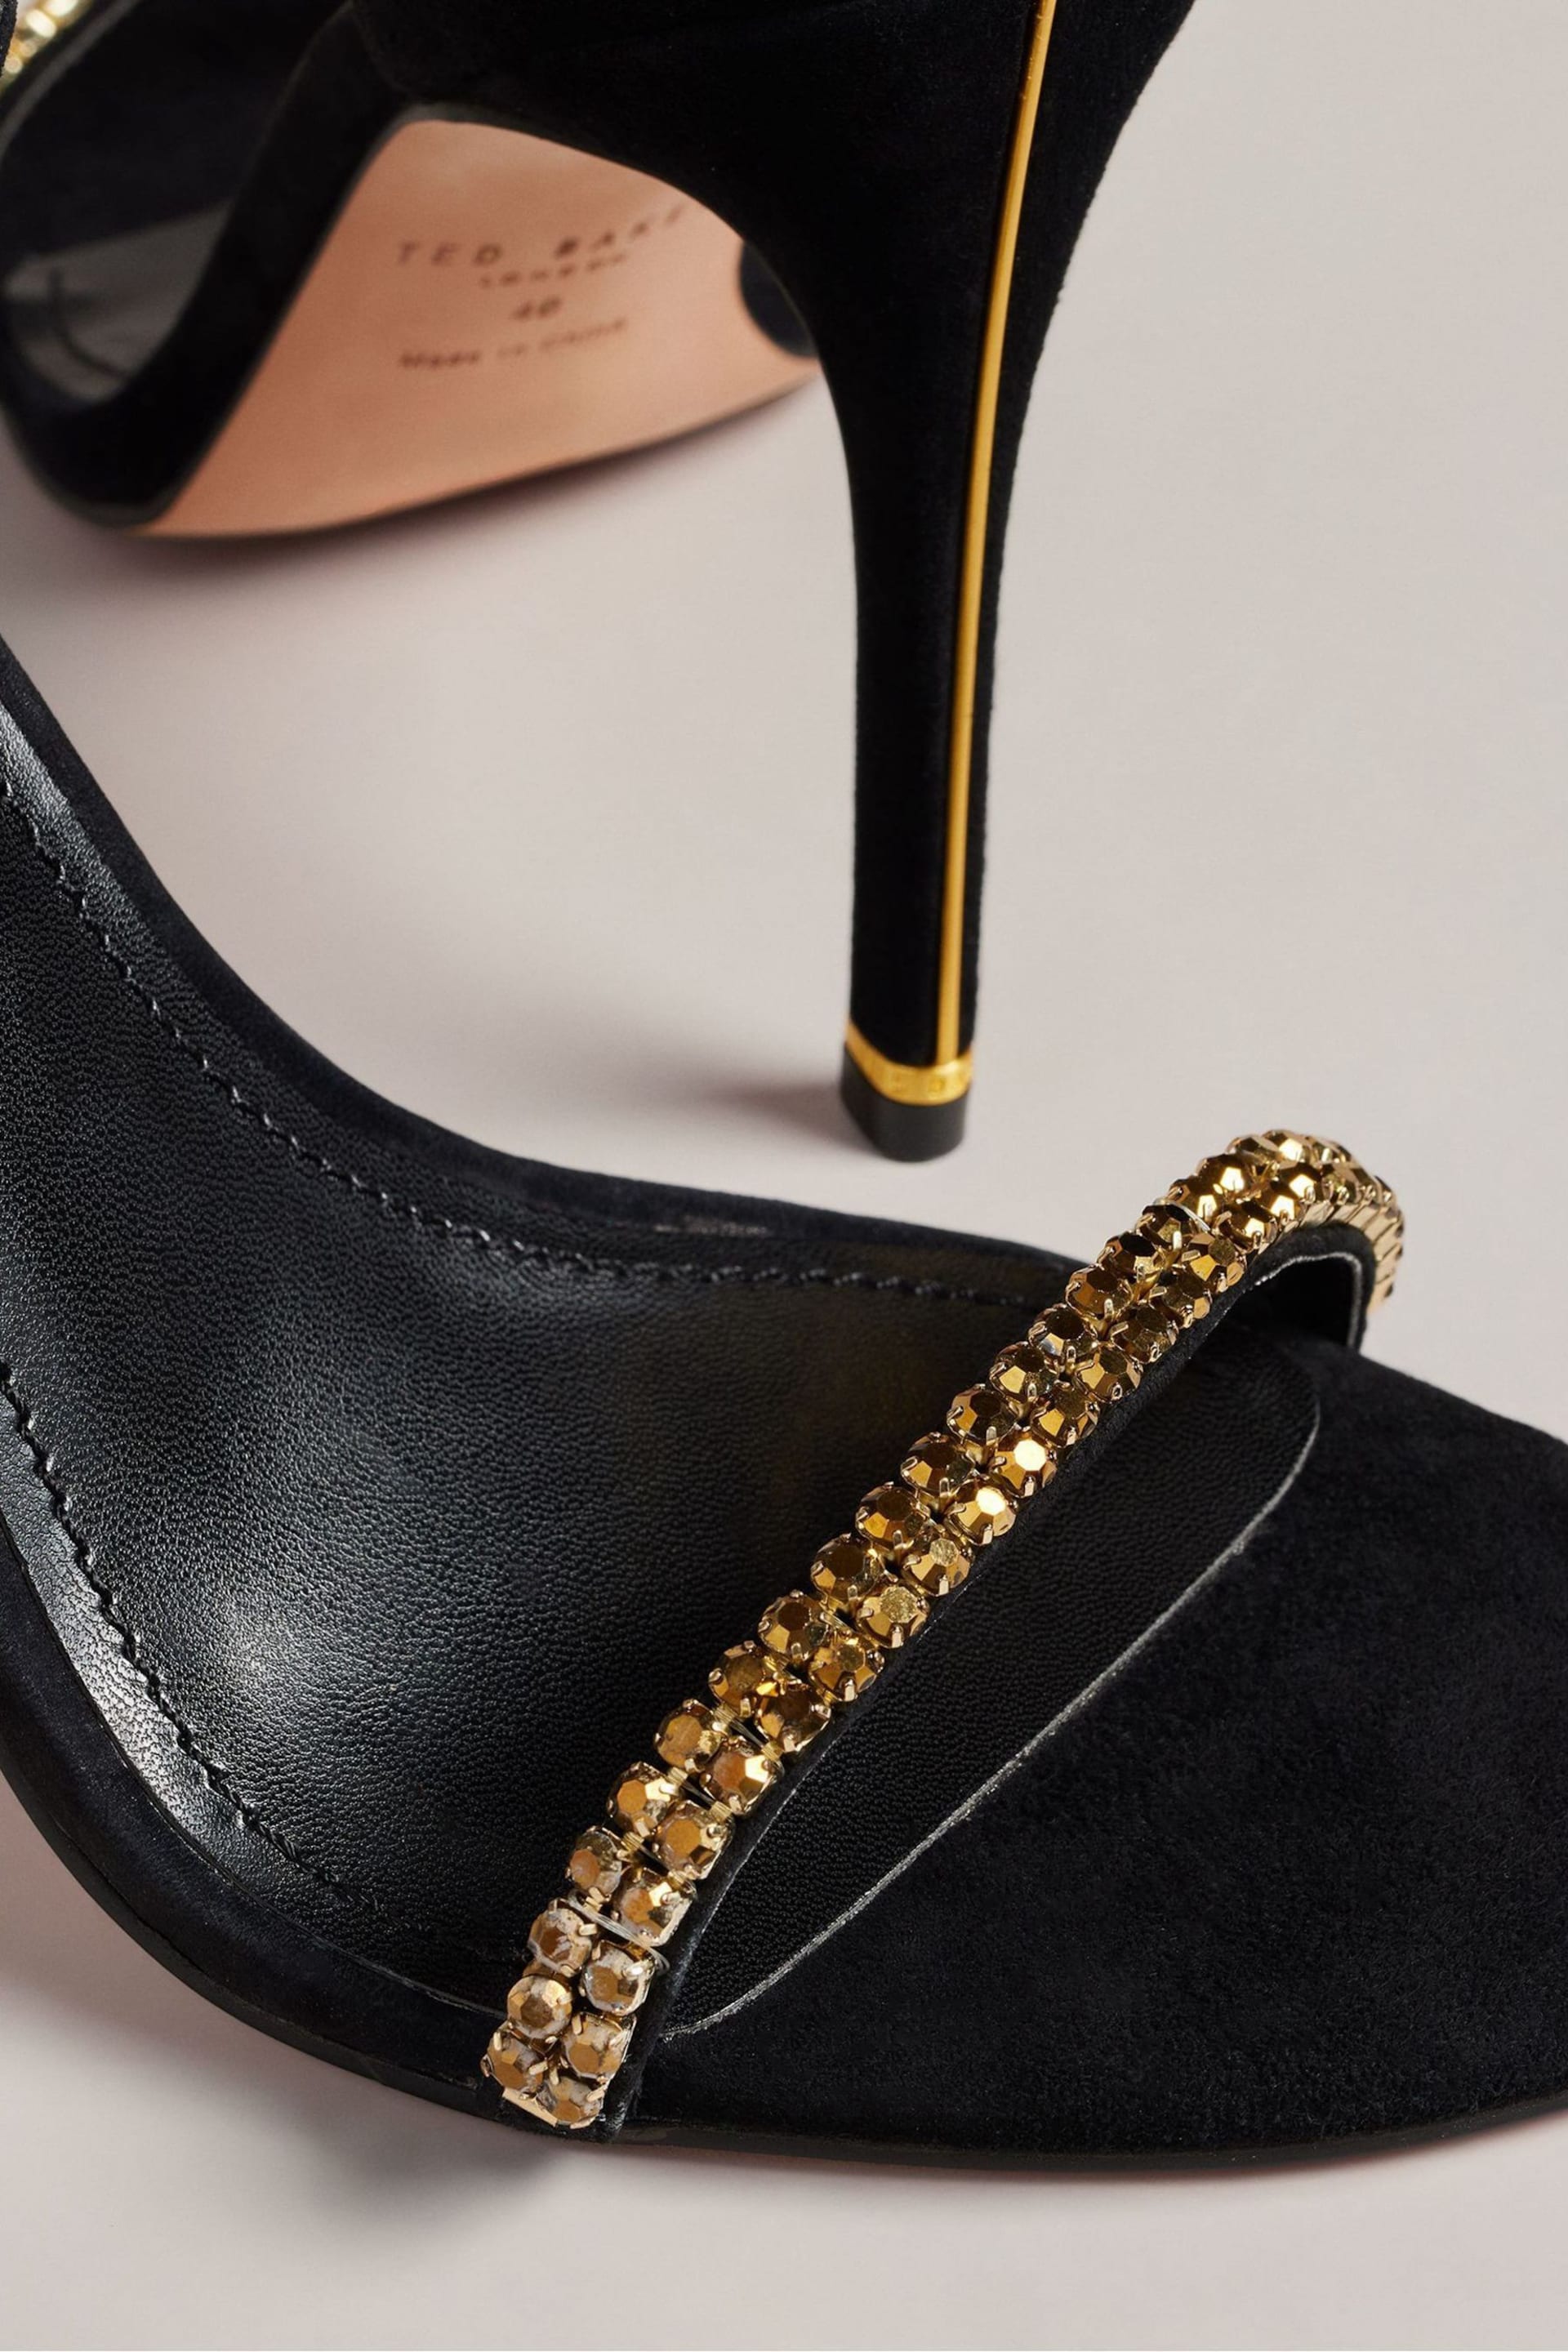 Ted Baker Gold/Black Helenni Crystal Strap Heeled Sandals - Image 4 of 5